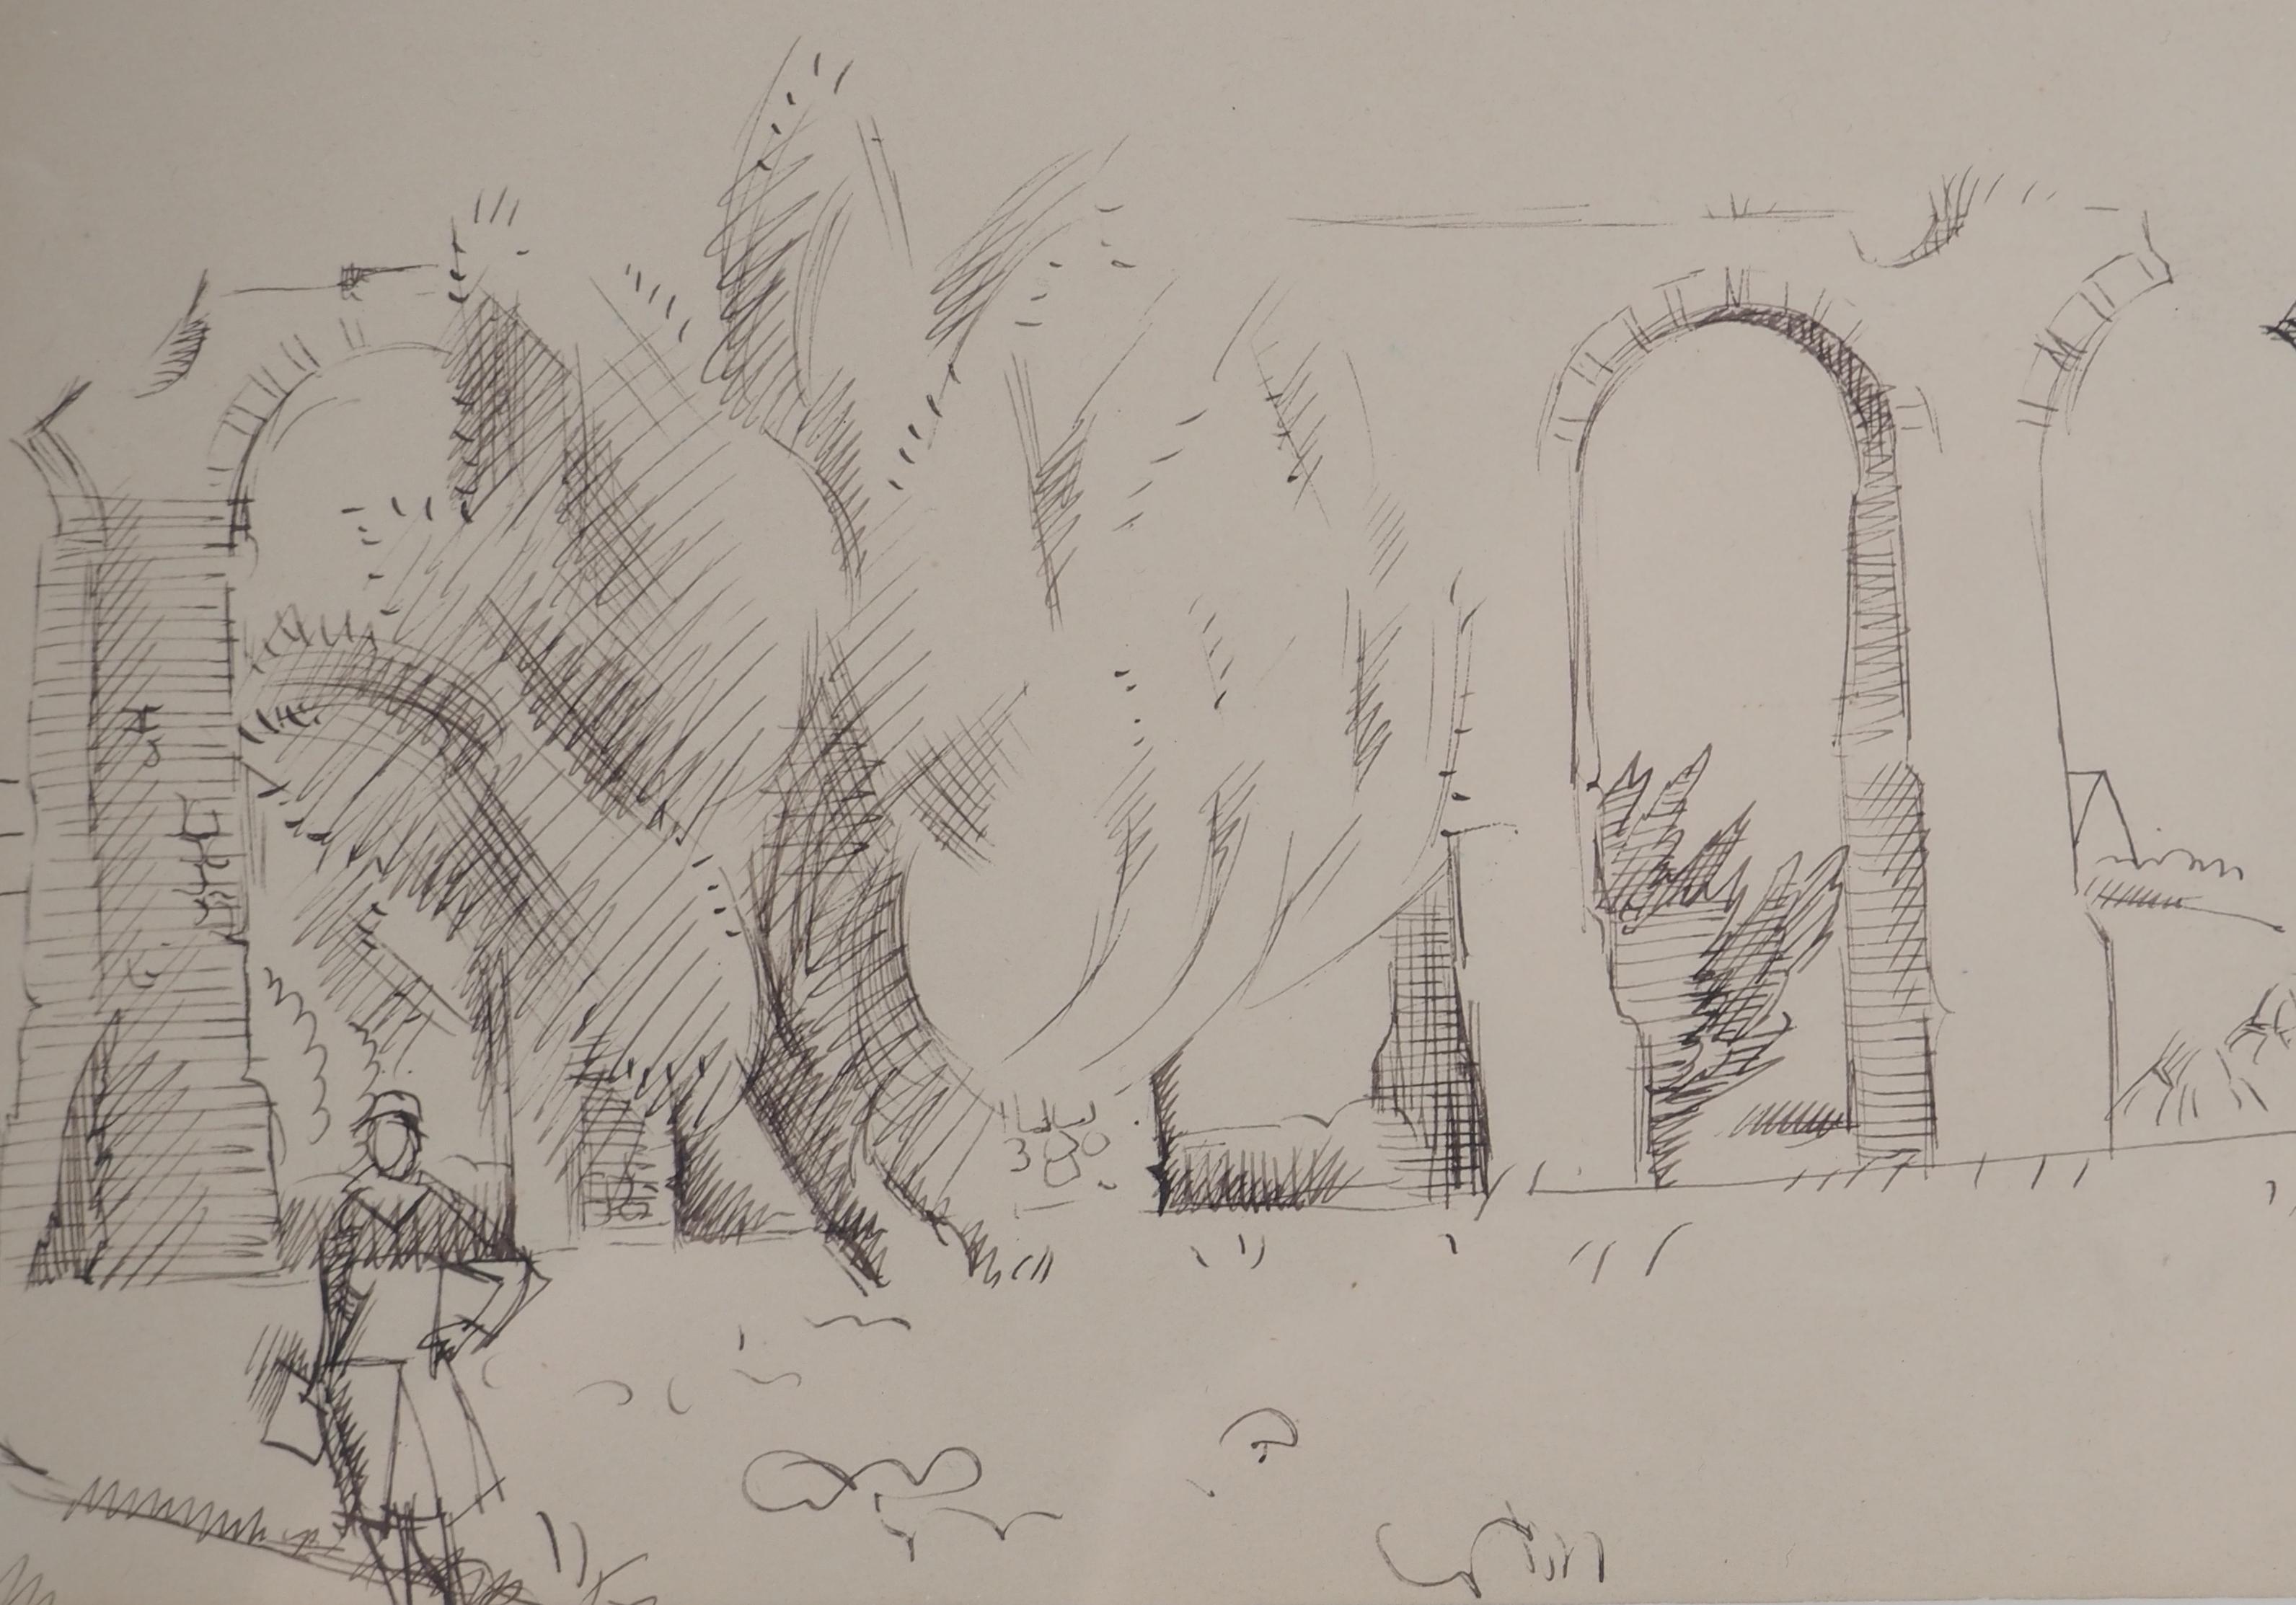 André LHOTE (1885-1962)
Römische Überreste: Brücke in der Provence (Le Pont du Gard), ca. 1925

Original Tuschezeichnung 
Signiert in der rechten unteren Ecke
Auf Papier 16 x 26 cm bei Sicht
Präsentiert in einem Rahmen aus lackiertem Holz 30 x 40